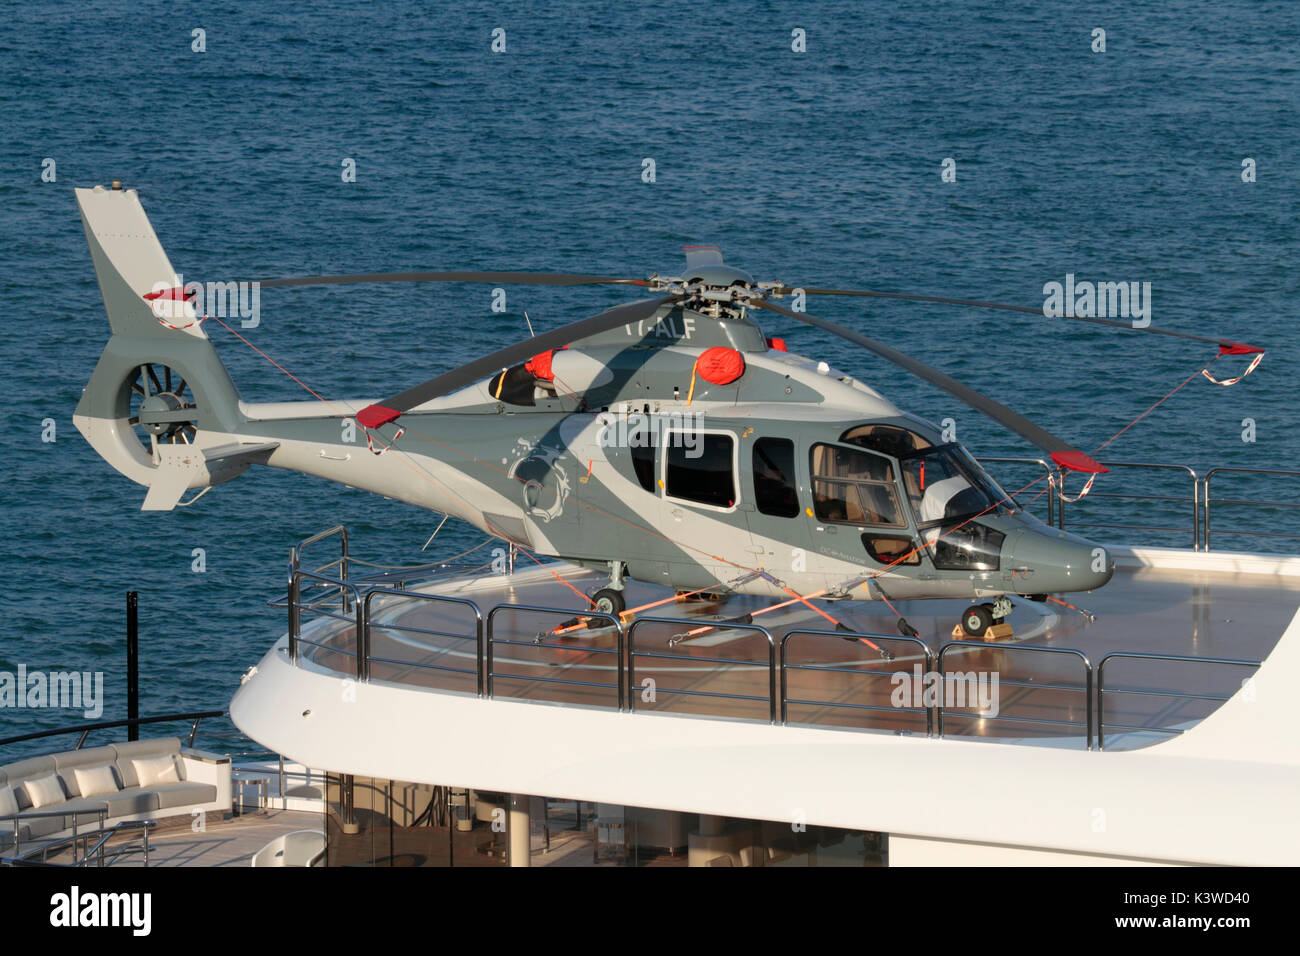 Hélicoptère sur le pont du navire. Eurocopter EC155-B1 (Airbus Helicopters H155) à bord du superyacht Radiant. Avion privé et aviation générale. Banque D'Images